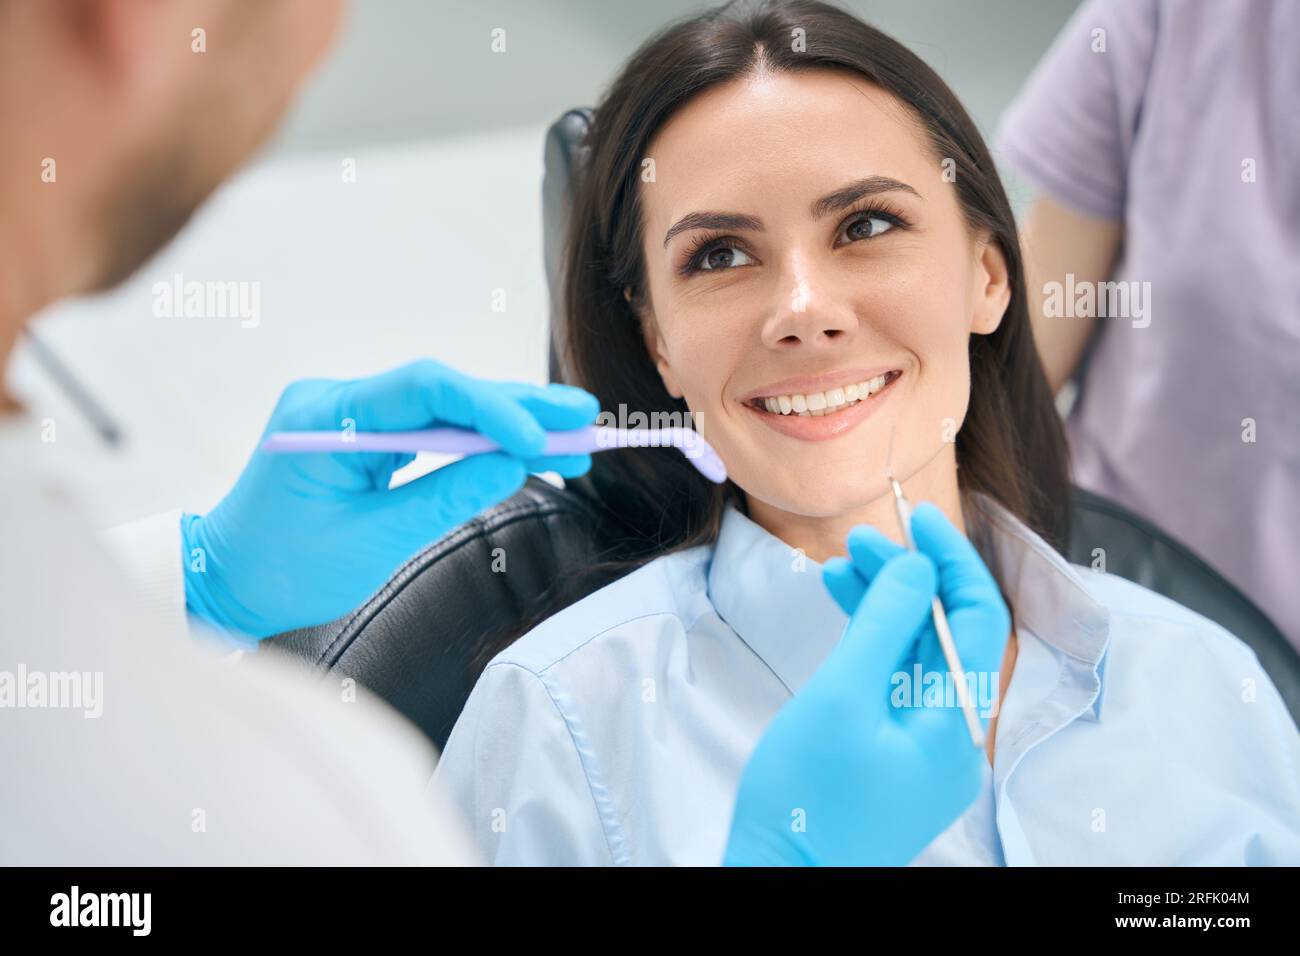 Männlicher Zahntechniker, der spezielle medizinische Werkzeuge wie Mundspiegel und Sichelsonde verwendet, um die Gesundheit von weiblichen Zähnen und Zahnfleisch zu überprüfen, Routineuntersuchungen Stockfoto